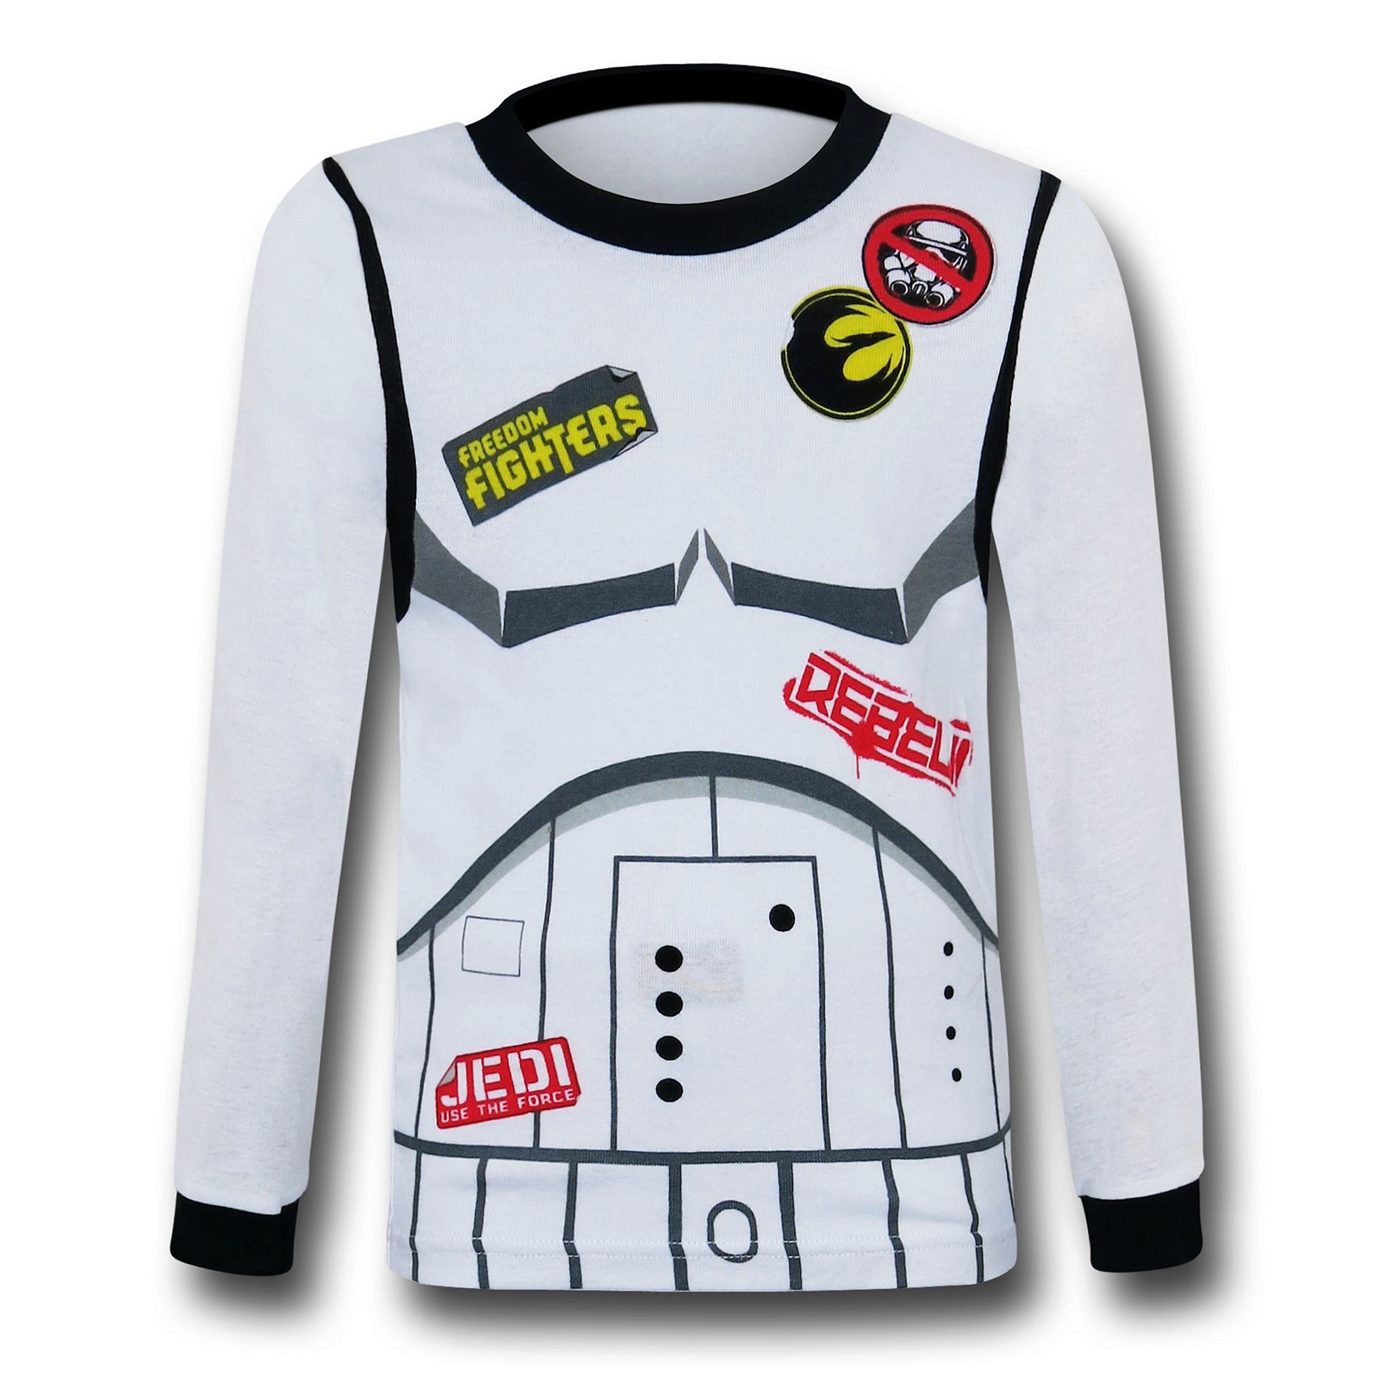 Star Wars Rebels 4-Piece Pajama Set